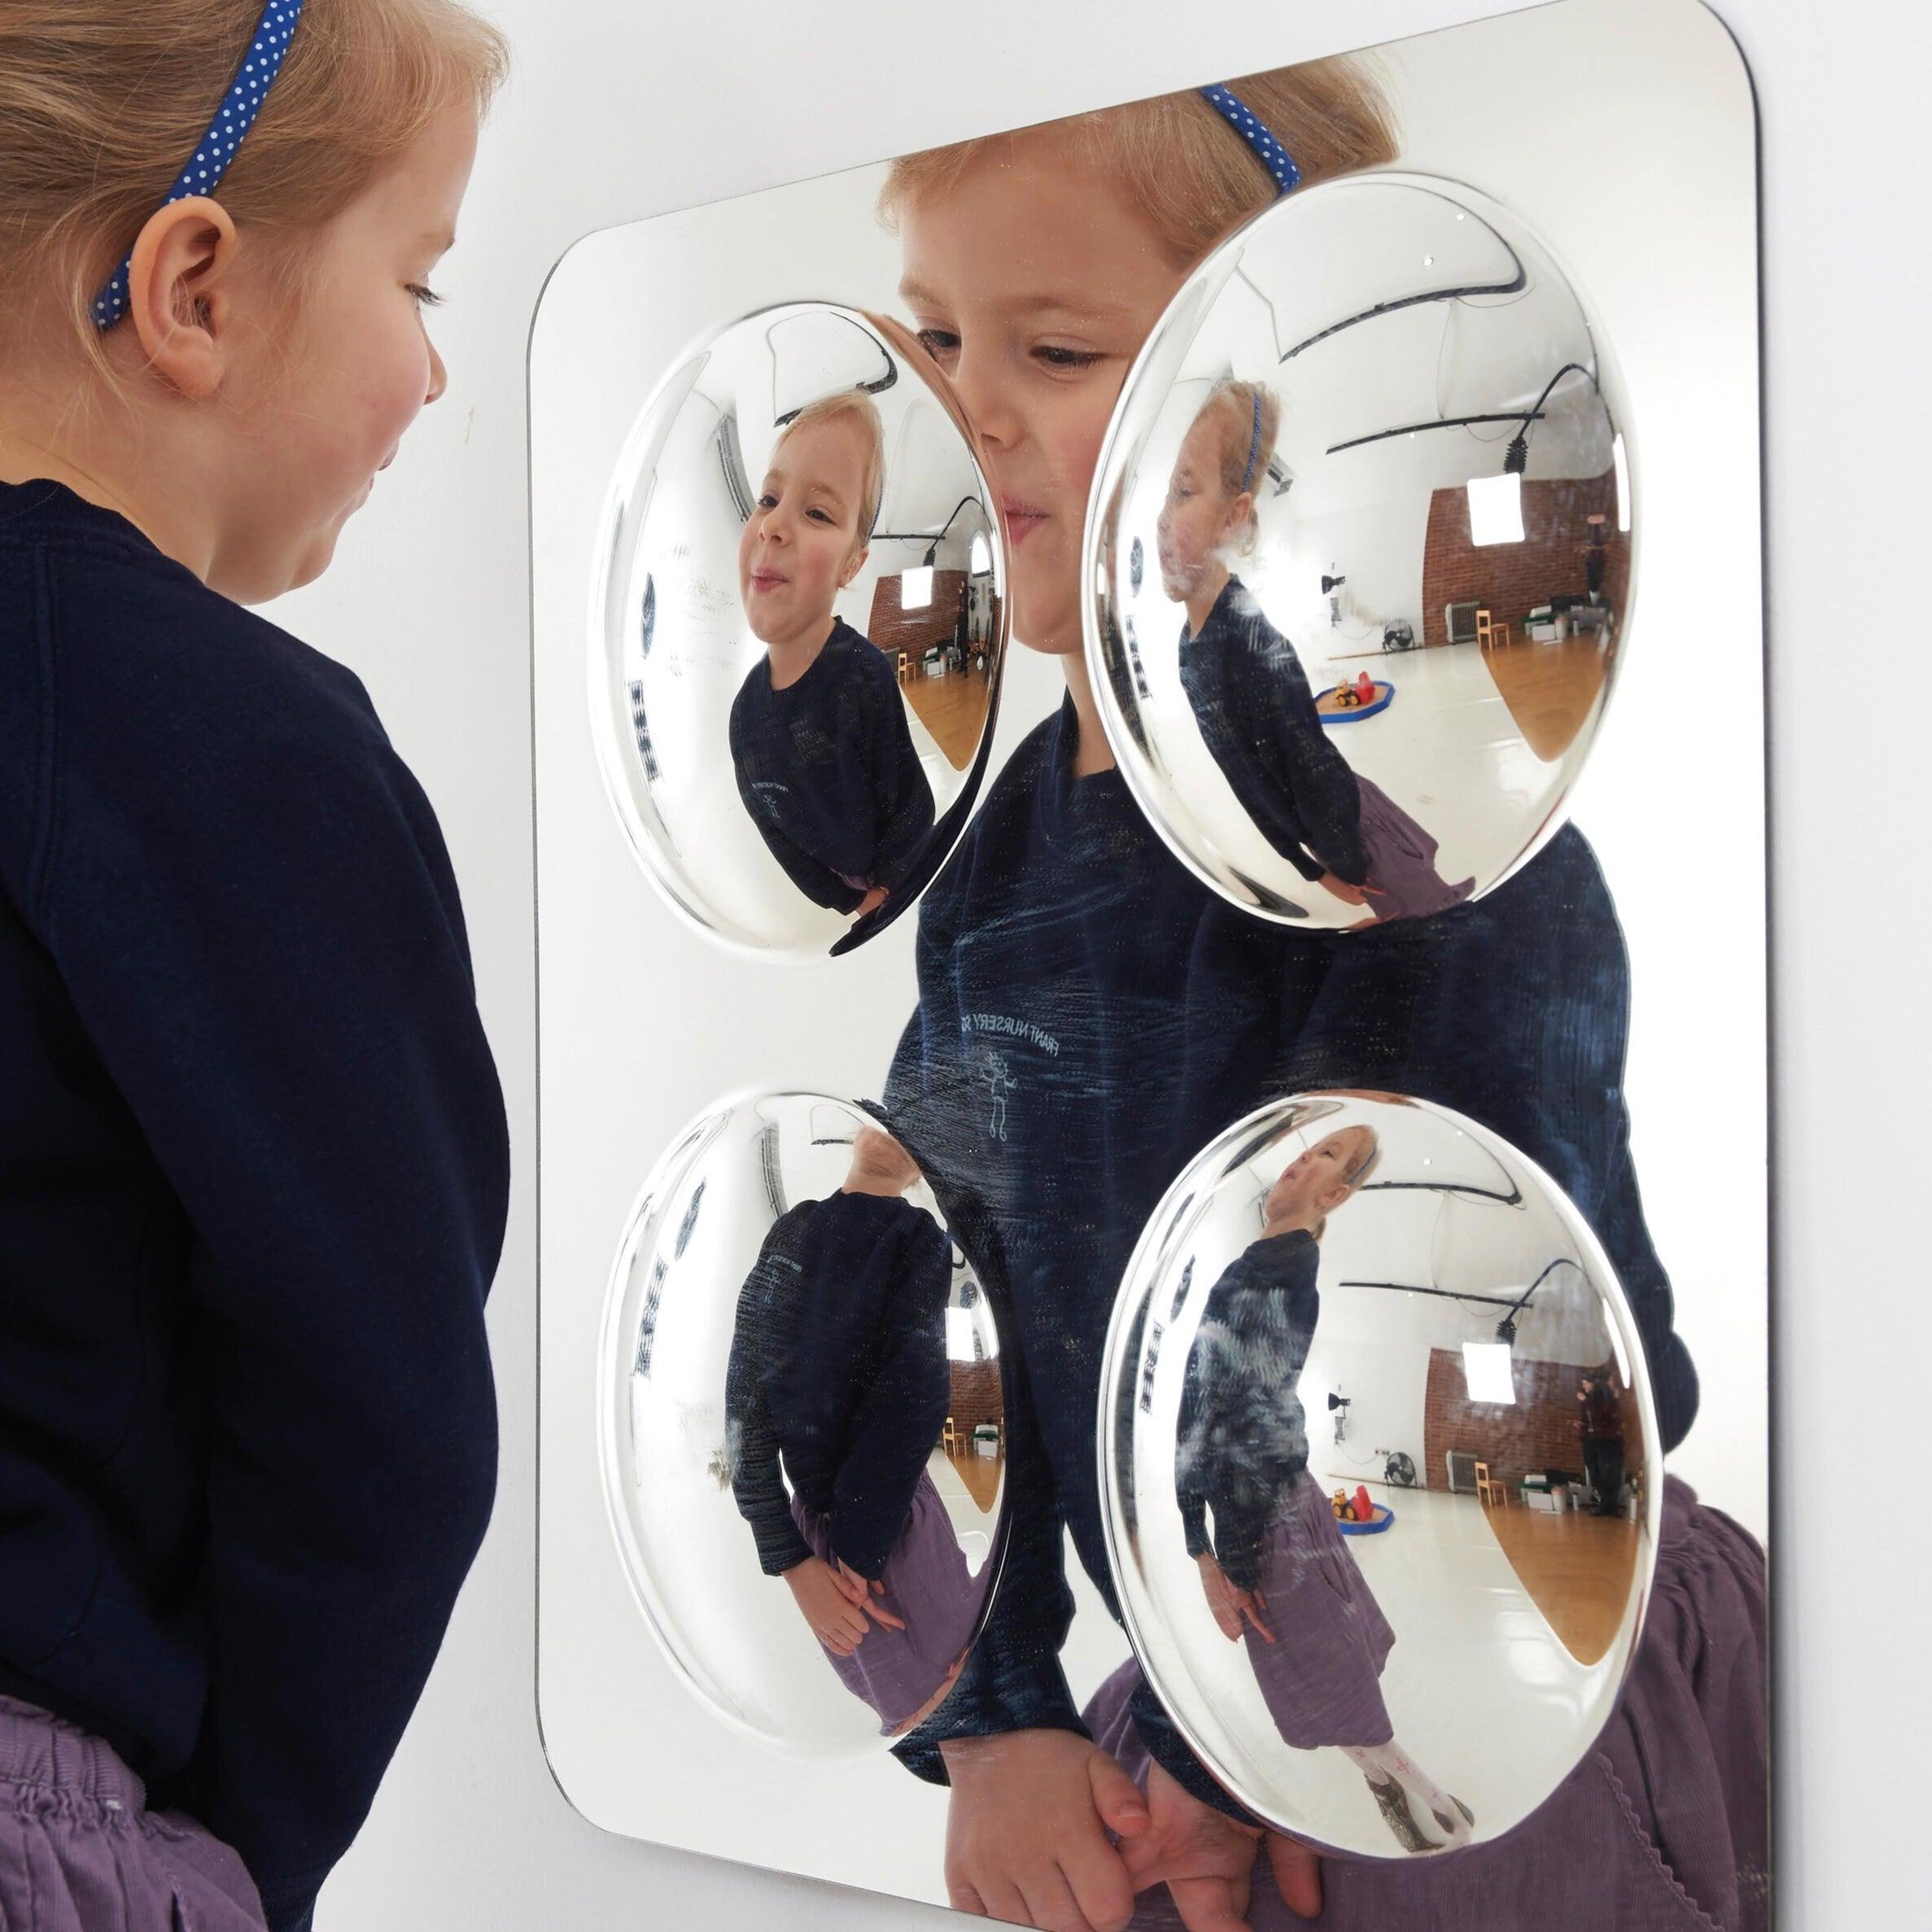 TickiT: bezpieczne wypukłe poczwórne lustro Large 4-Domed Acrylic Mirror Panel - Noski Noski